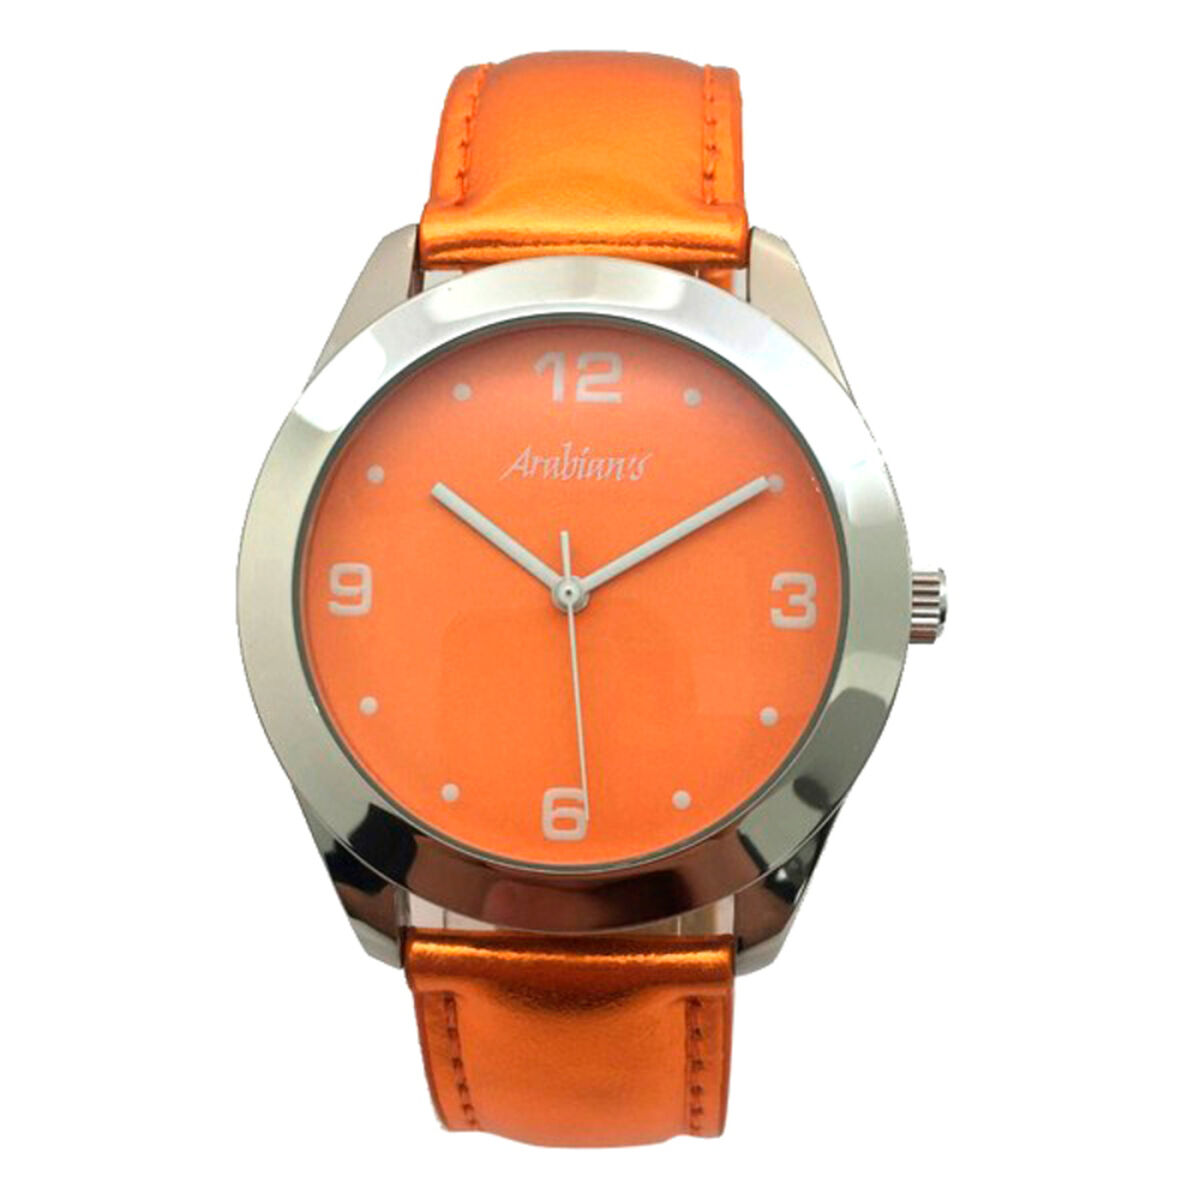 Osta tuote Unisex kellot Arabians HBA2212C (Ø 40 mm) verkkokaupastamme Korhone: Muoti & Asusteet 10% alennuksella koodilla KORHONE